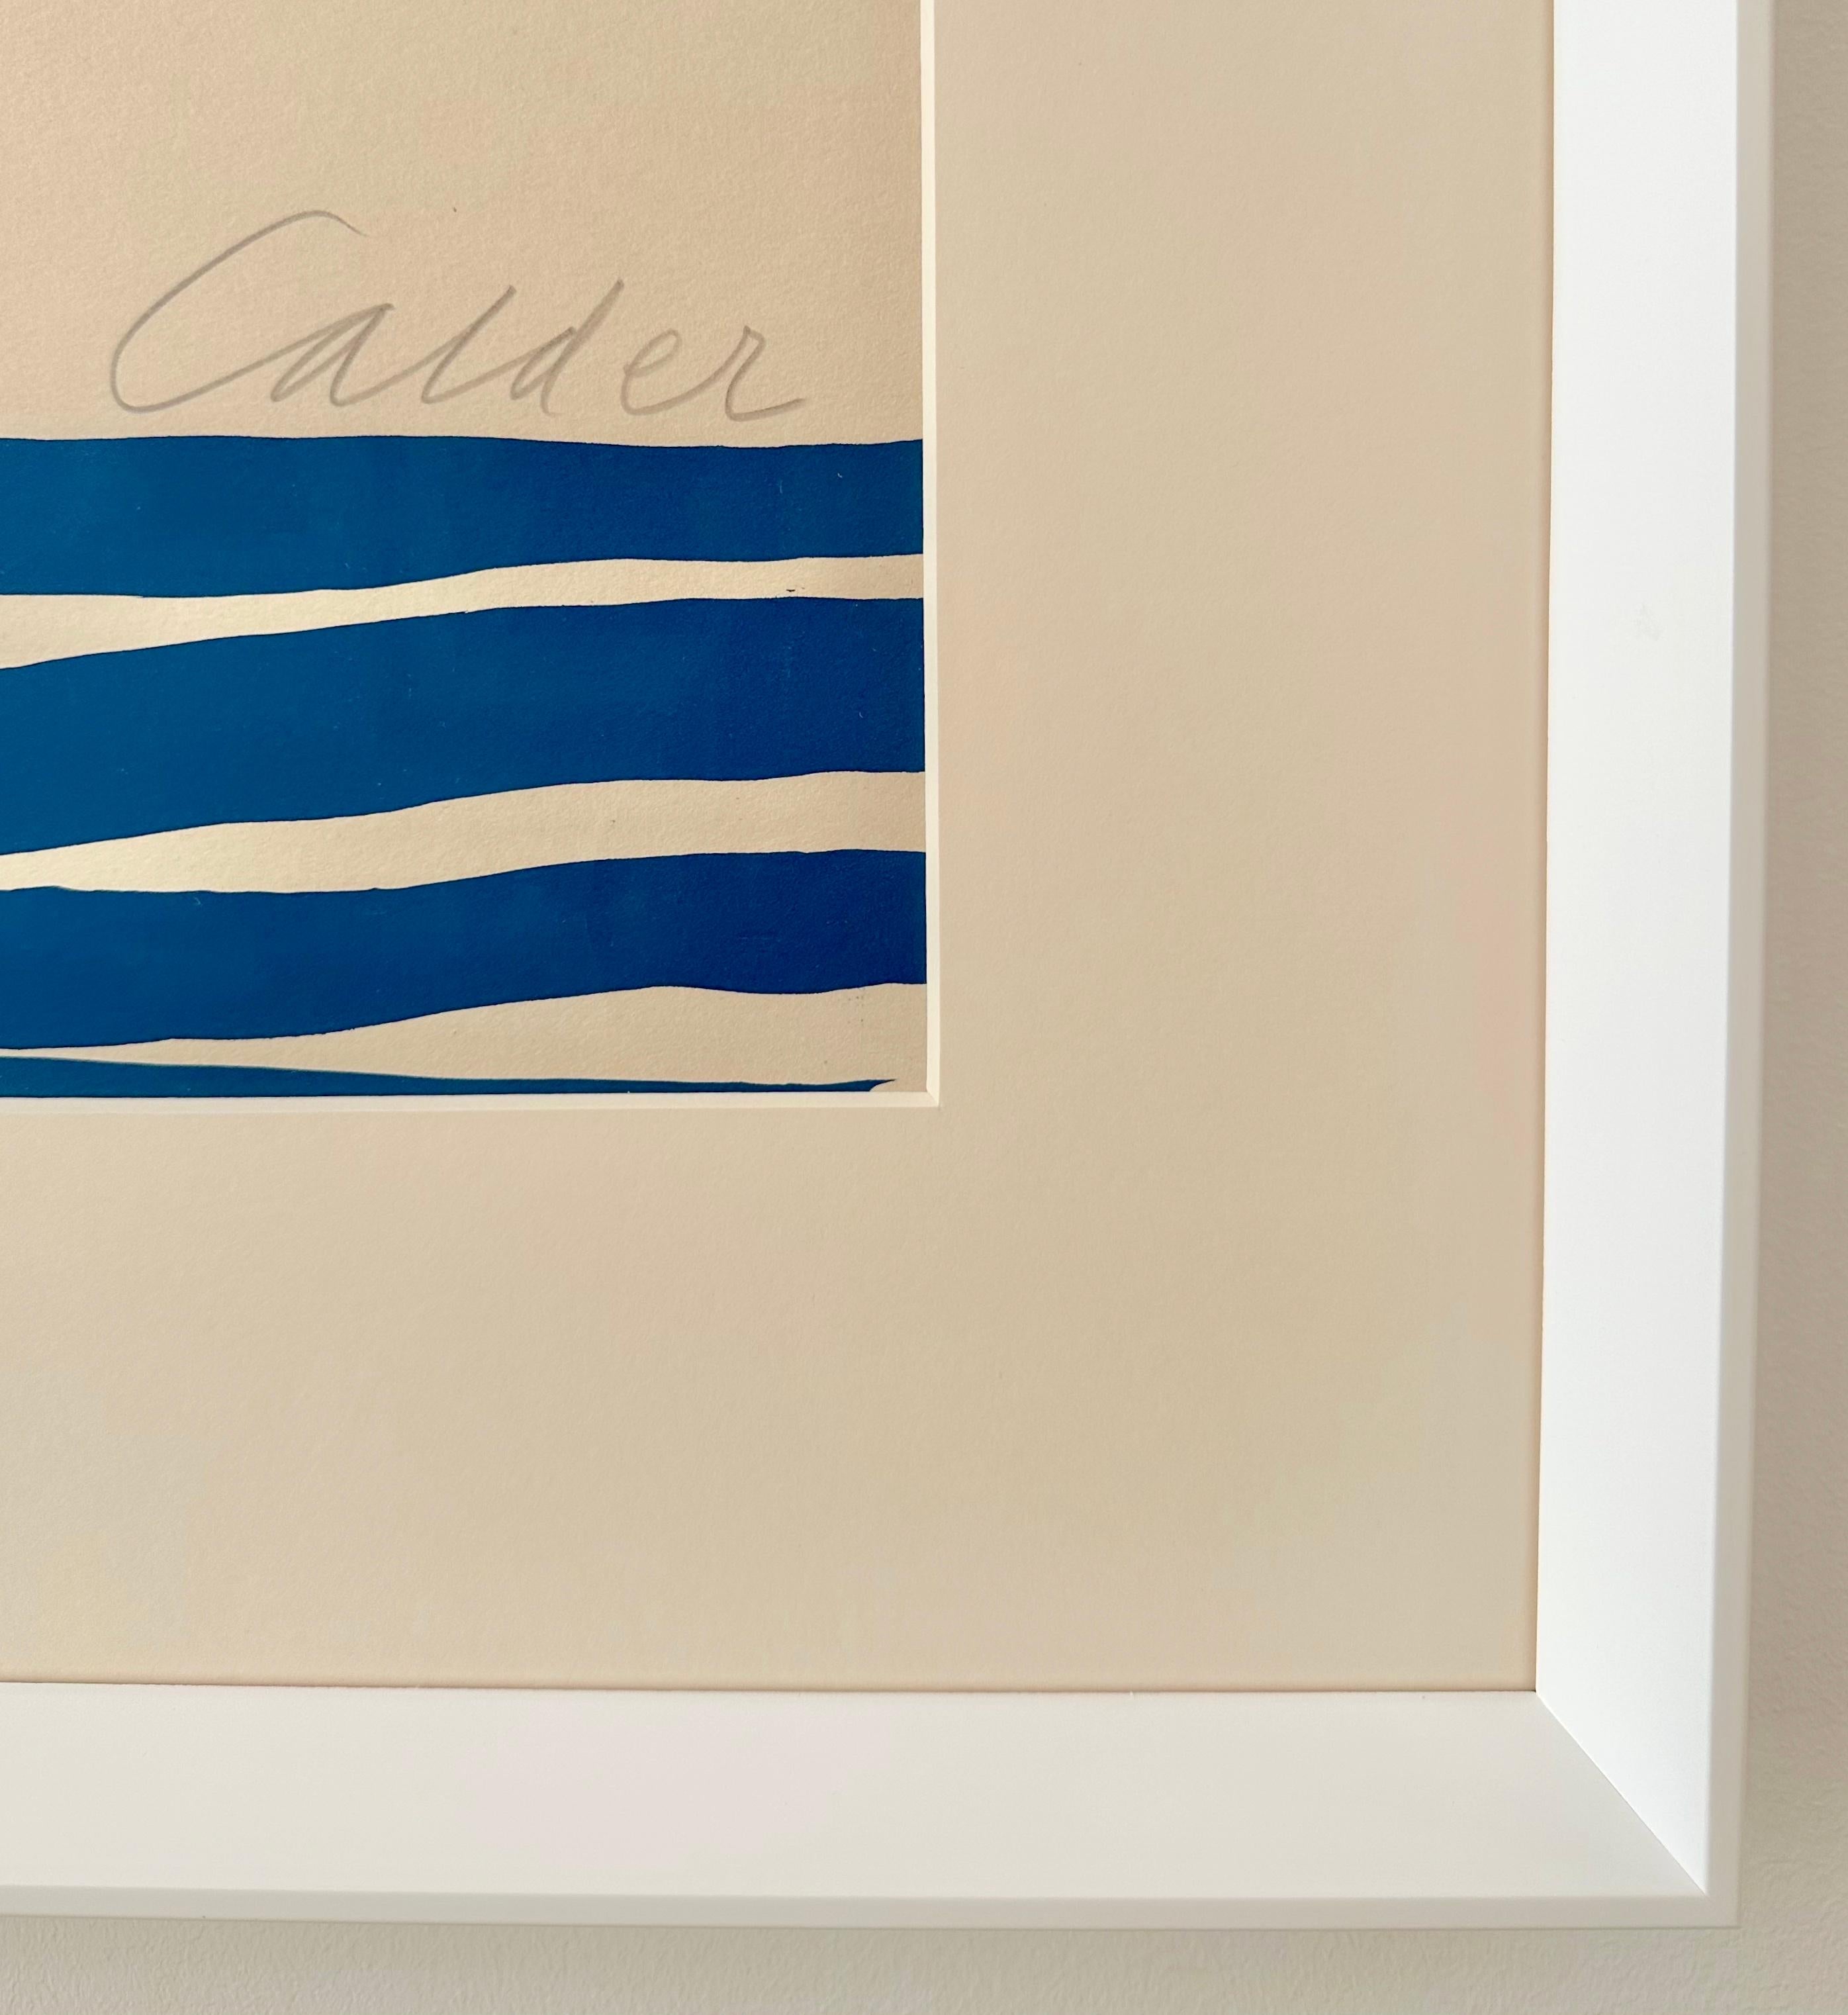 Alexander Calder- Seestück
Farblithographie auf cremefarbenem Arches-Papier, 1974
Auflage von 150 Stück
Signiert mit Bleistift, unten rechts
Mit Bleistift nummeriert (105/ 150), unten links
Mit Blindstempel, unten links
Blattgröße: 100,5 × 71,0 cm,